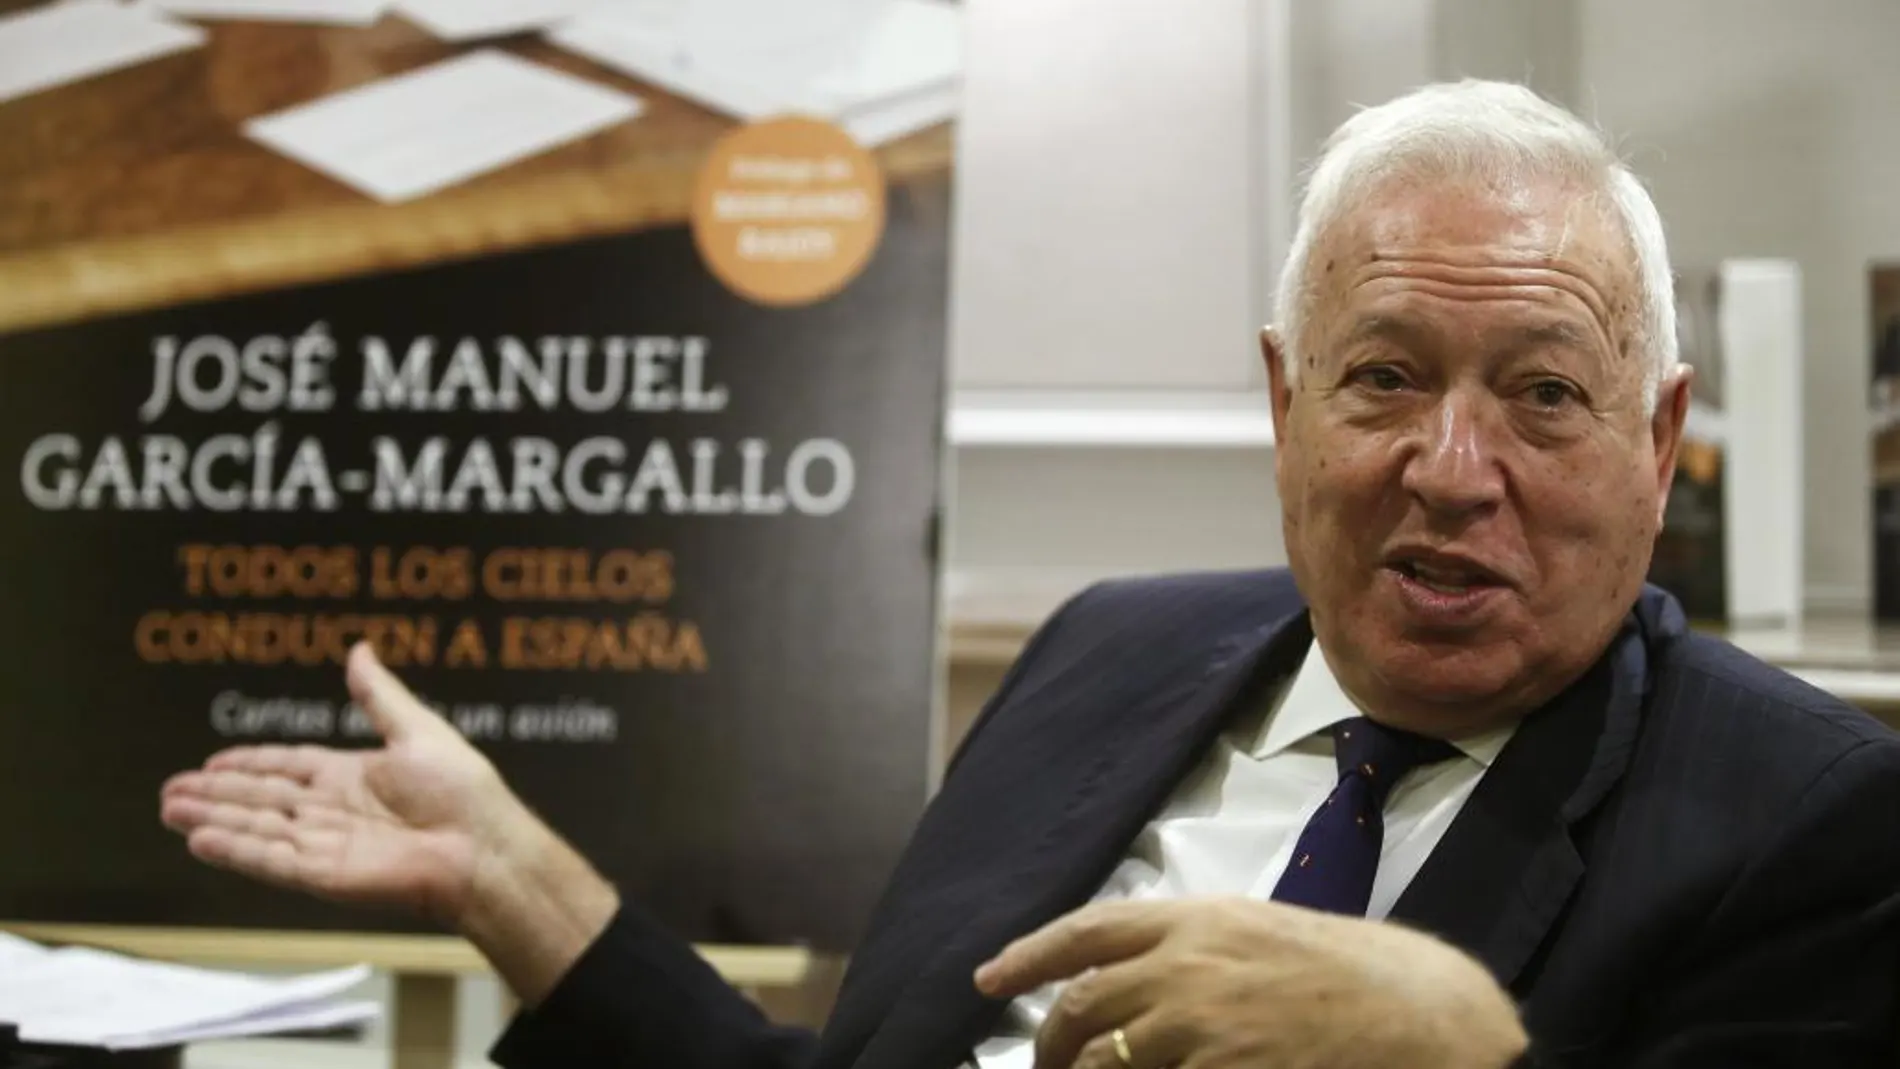 El ministro de Exteriores, José Manuel García-Margallo, durante un encuentro con varios periodistas con motivo de la publicación de su libro "Todos los cielos conducen a España. Cartas desde un avión"(Planeta)